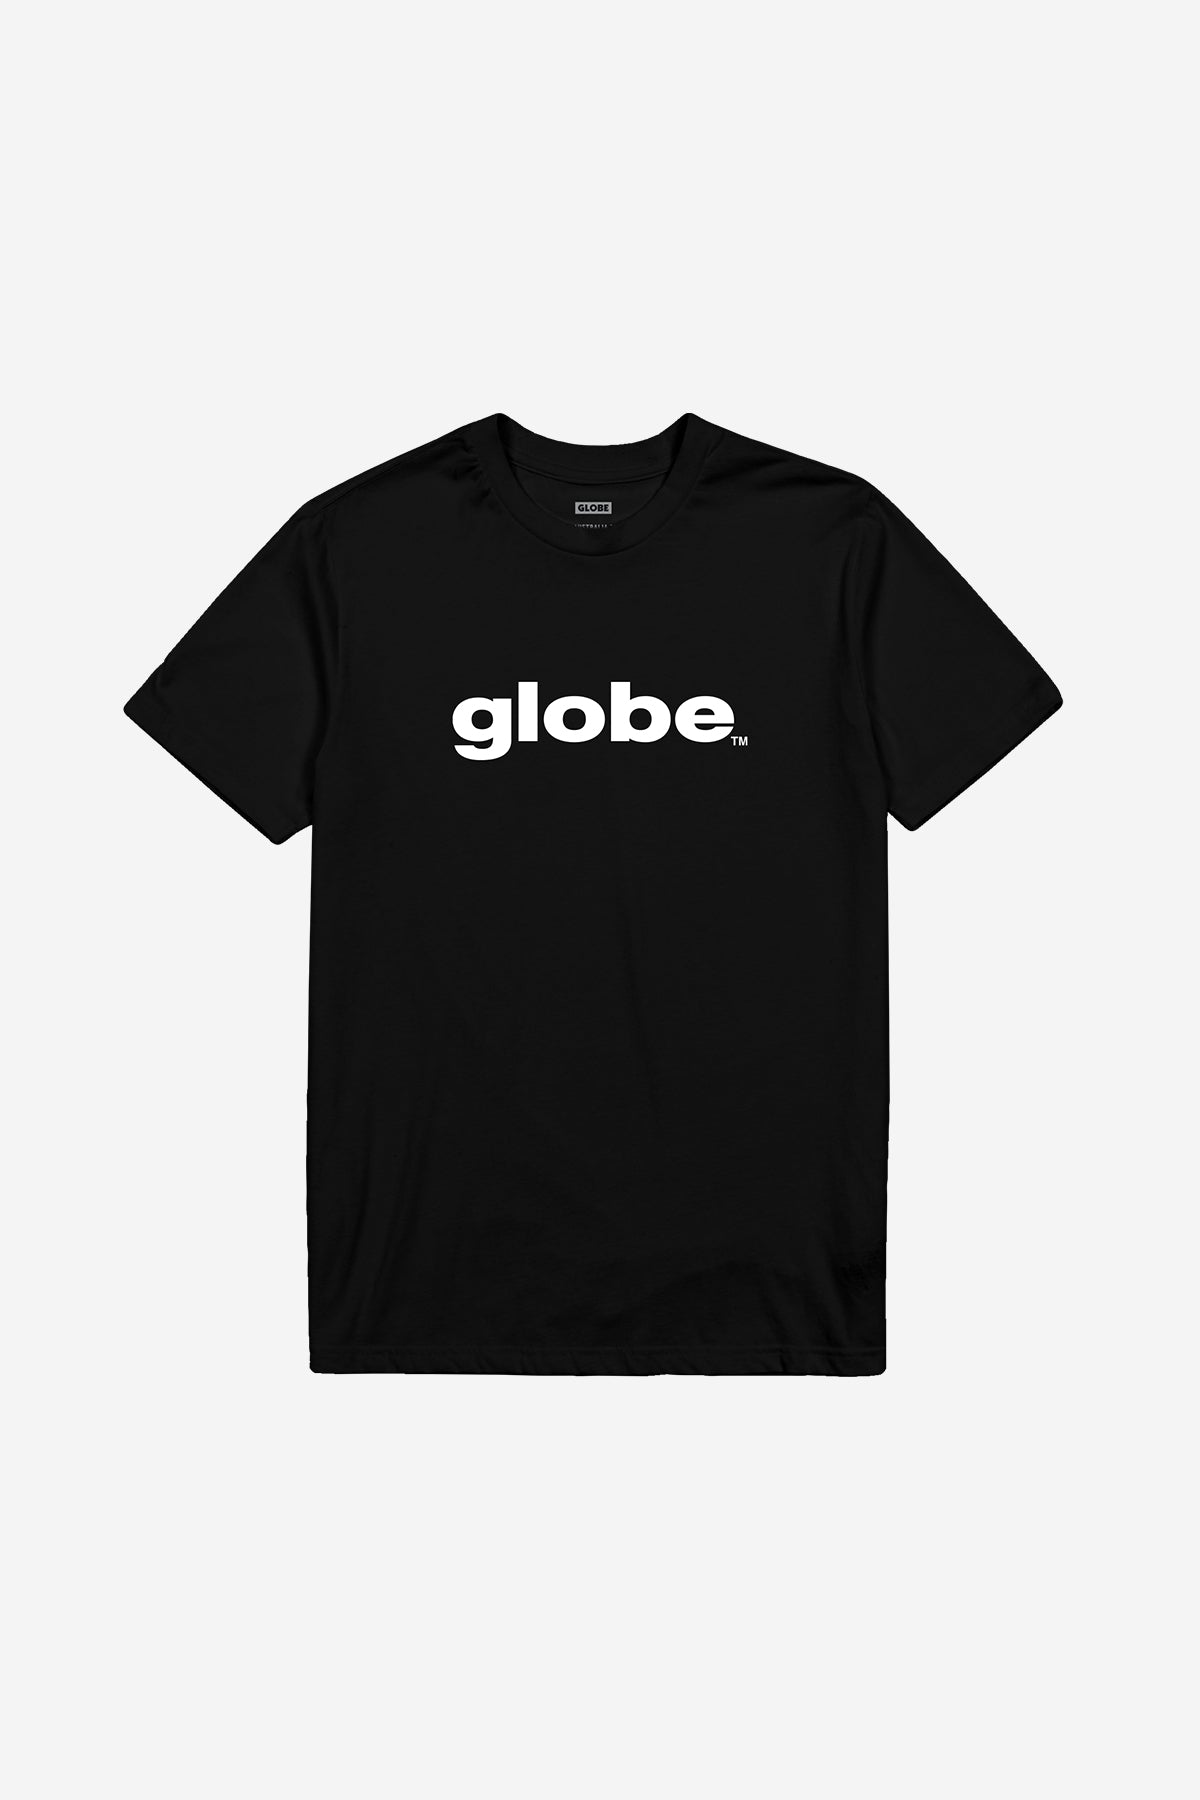 Globe - O.G Tee - Noir